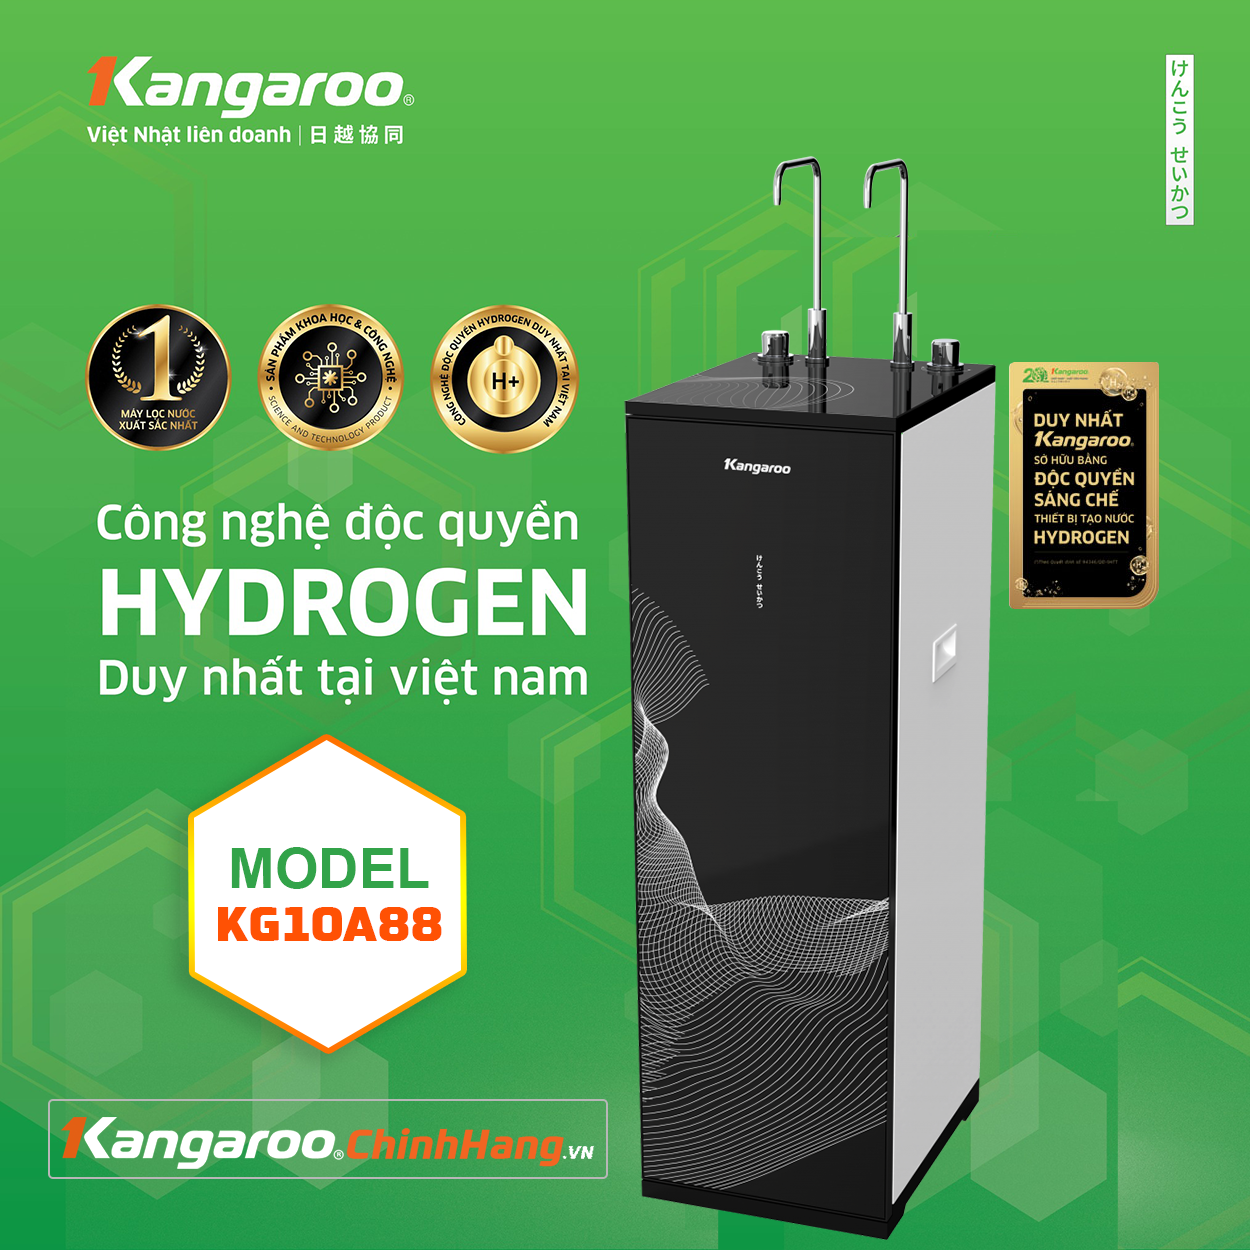 Máy lọc nước Kangaroo Hydrogen KG10A68